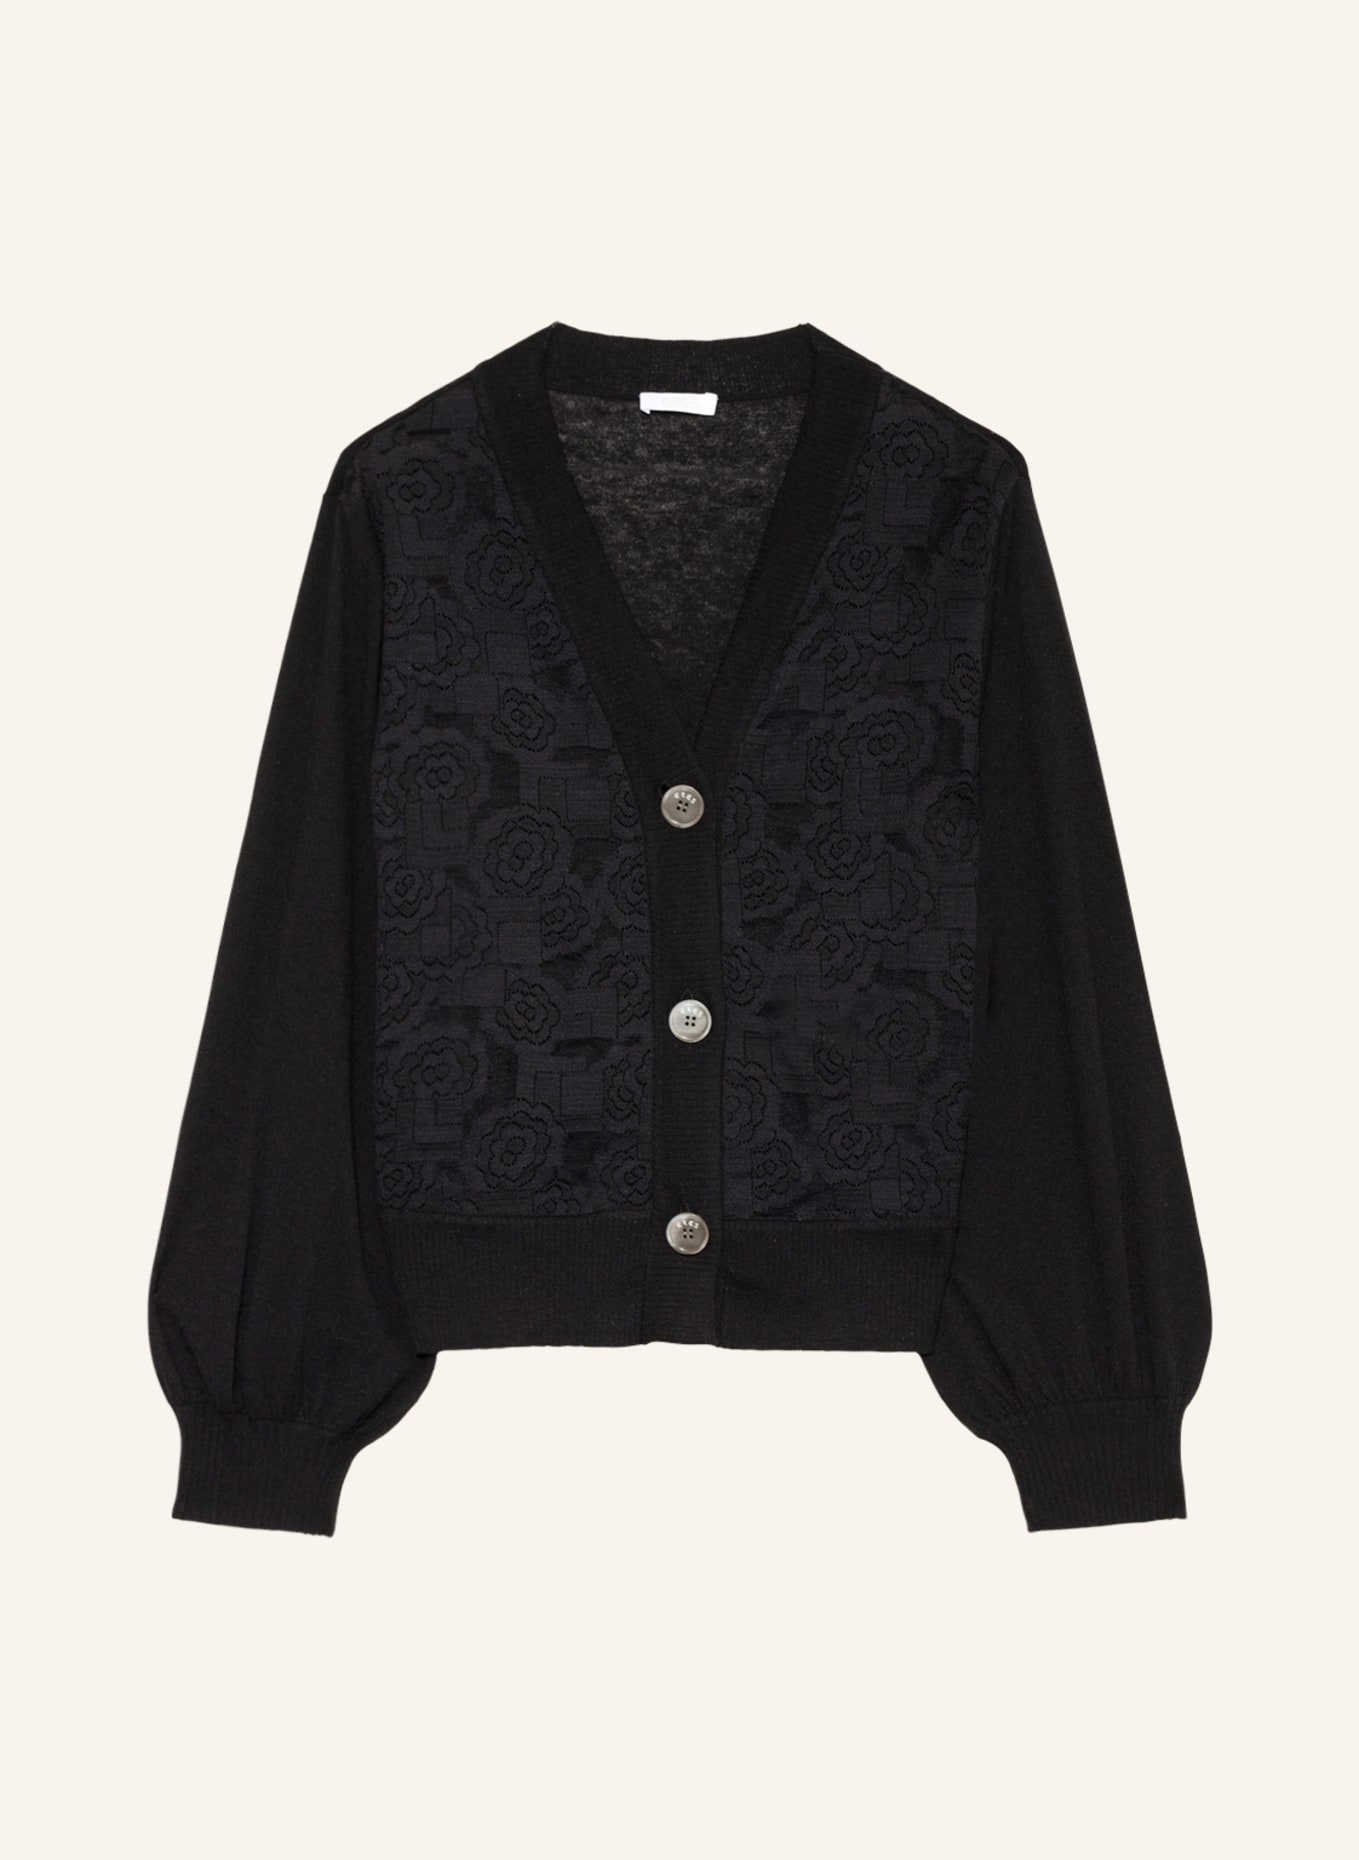 ERES Lounge jacket FRECKLES made of cashmere, Color: BLACK (Image 1)